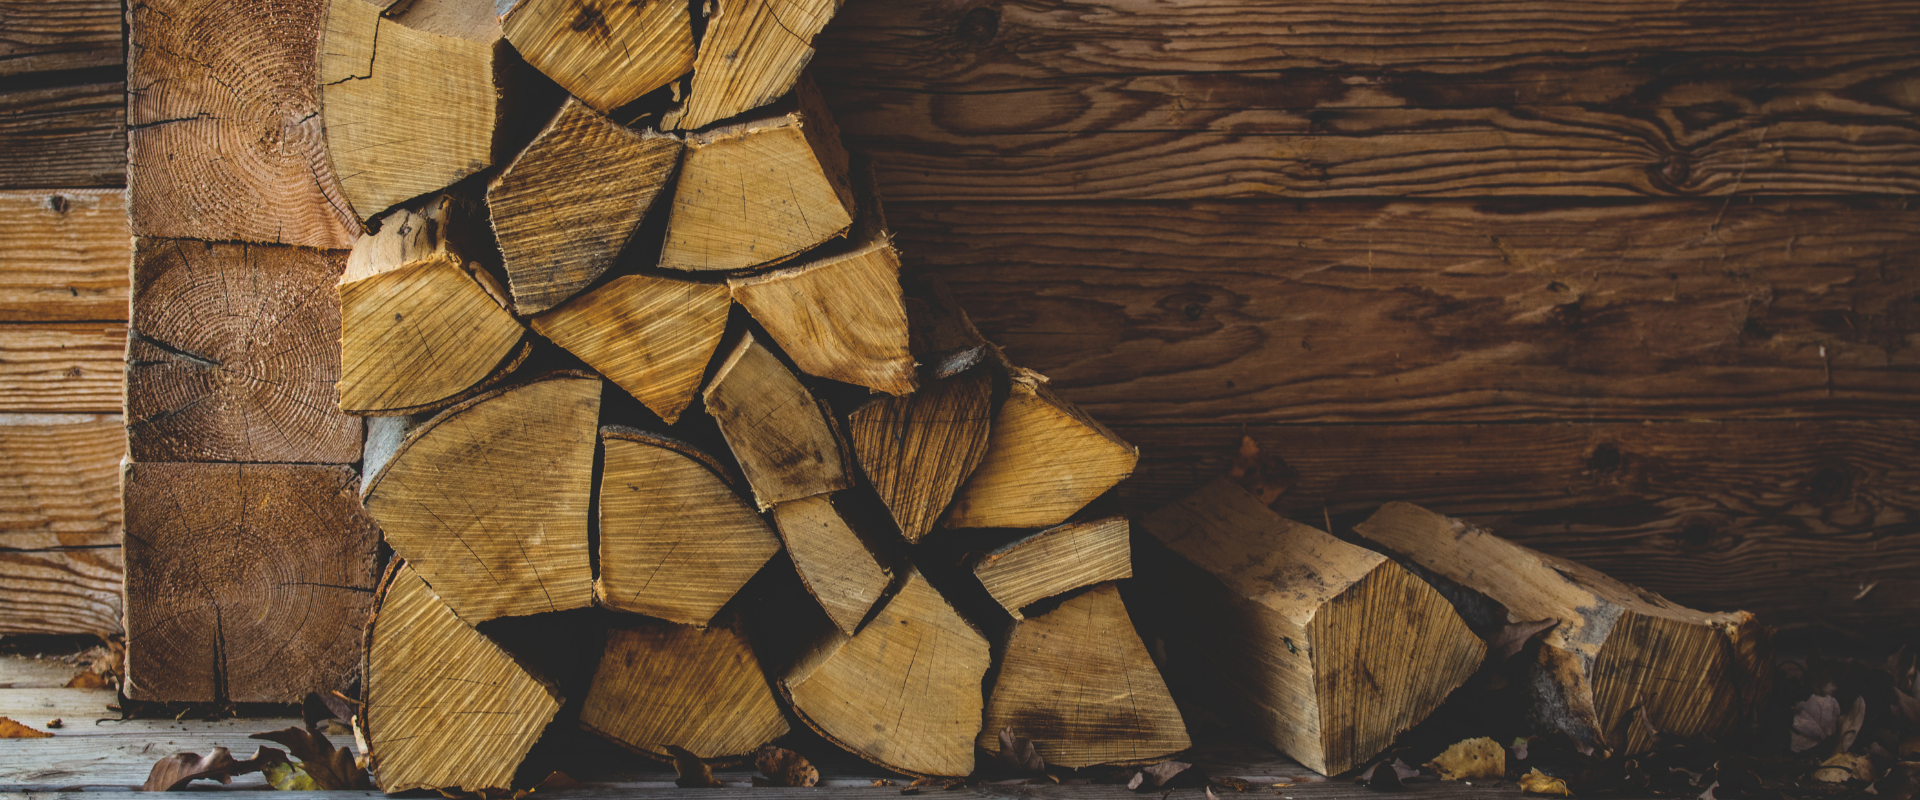 Comment choisir le bois de chauffage pour la cheminee